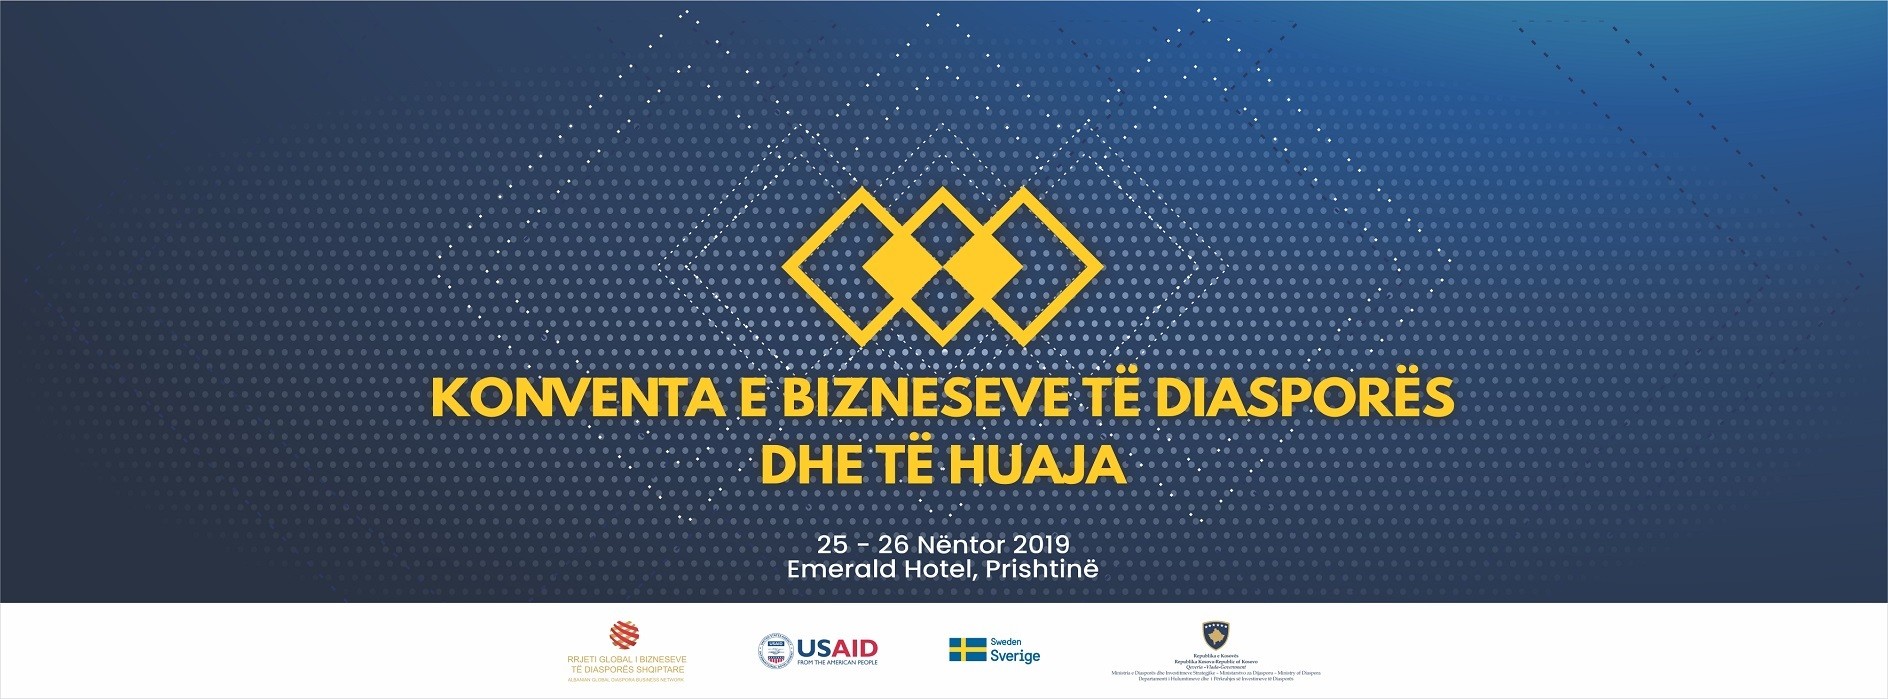 Bizneset e diasporës dhe të huaja vijnë për bashkëpunim me bizneset e Kosovës